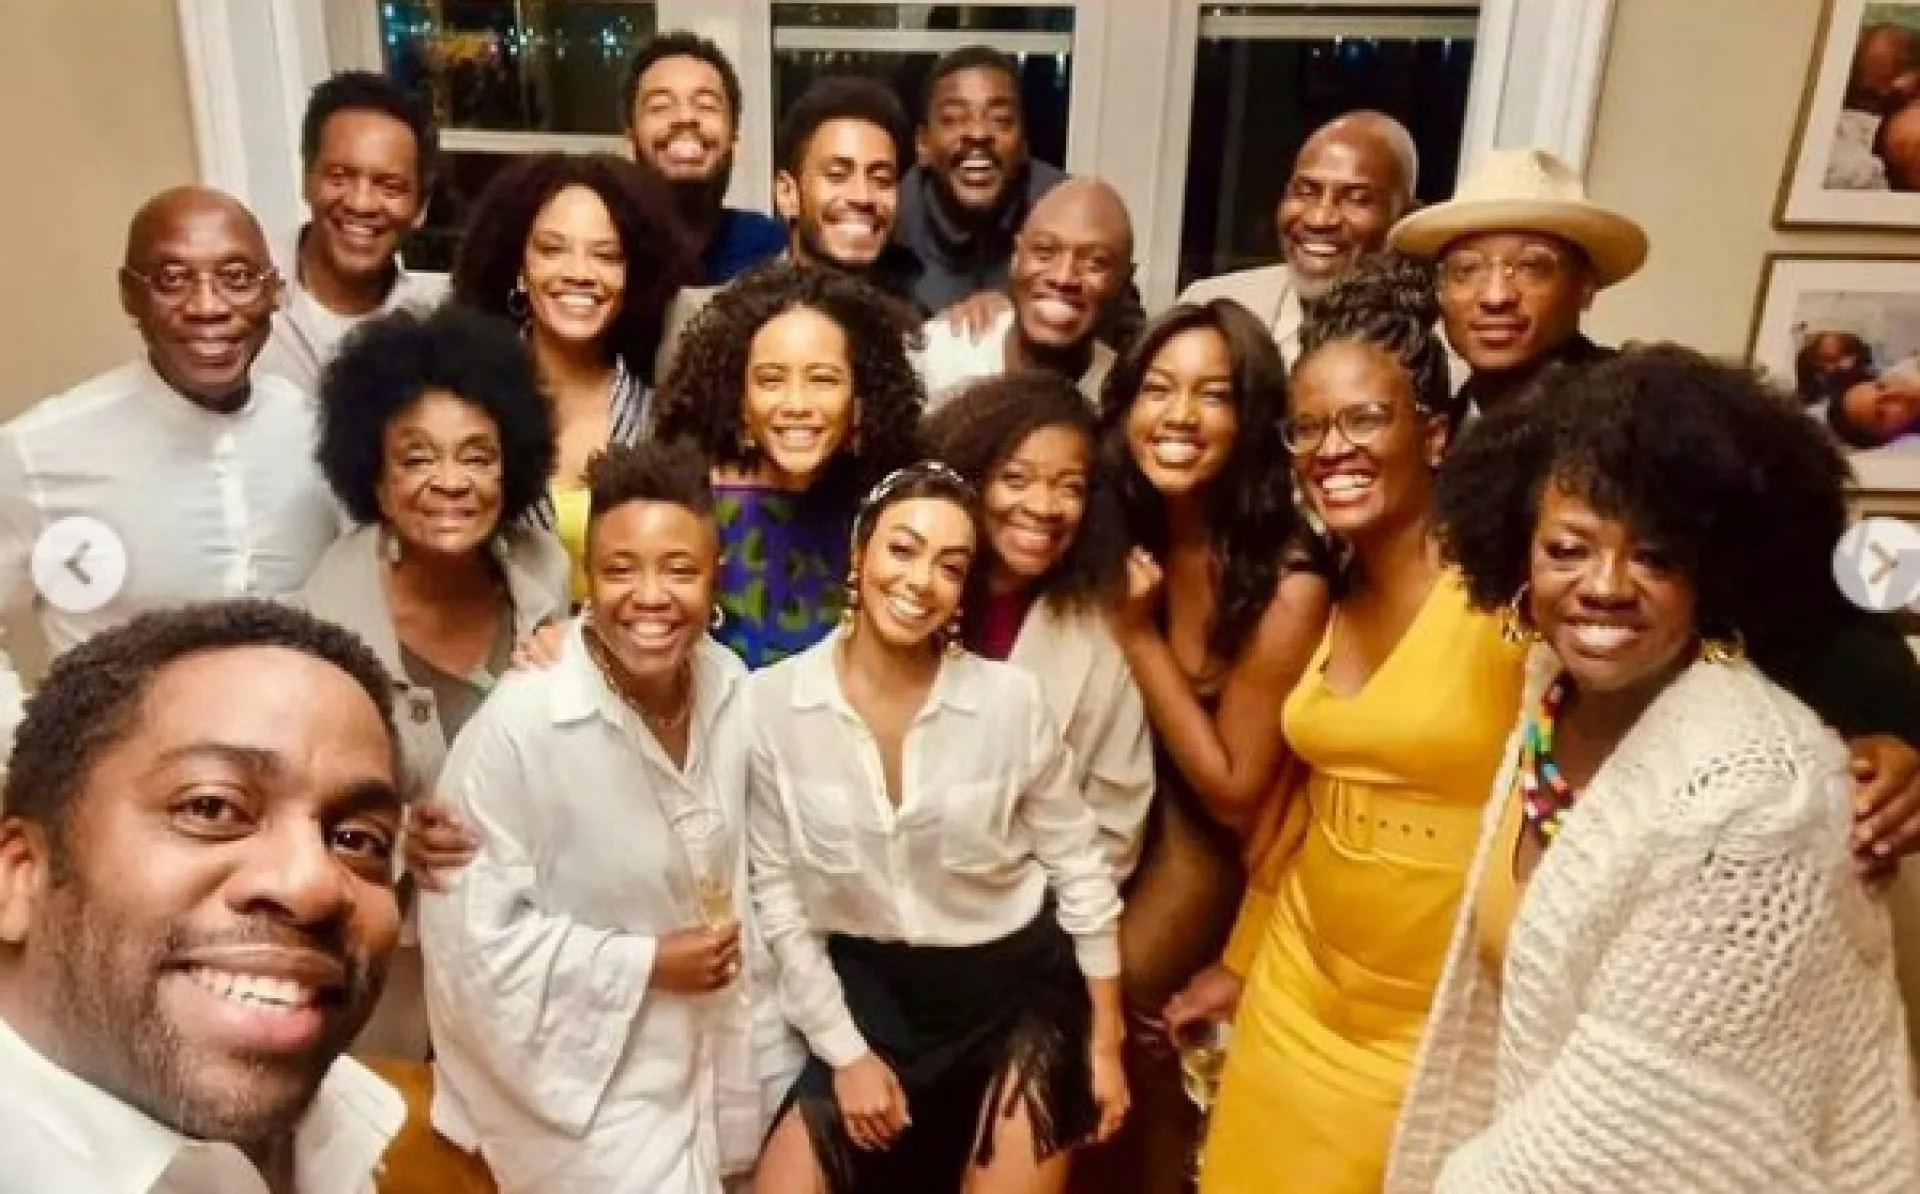 contioutra.com - Viola Davis celebra encontro com artistas pretos no Brasil: "Brilhantes!"